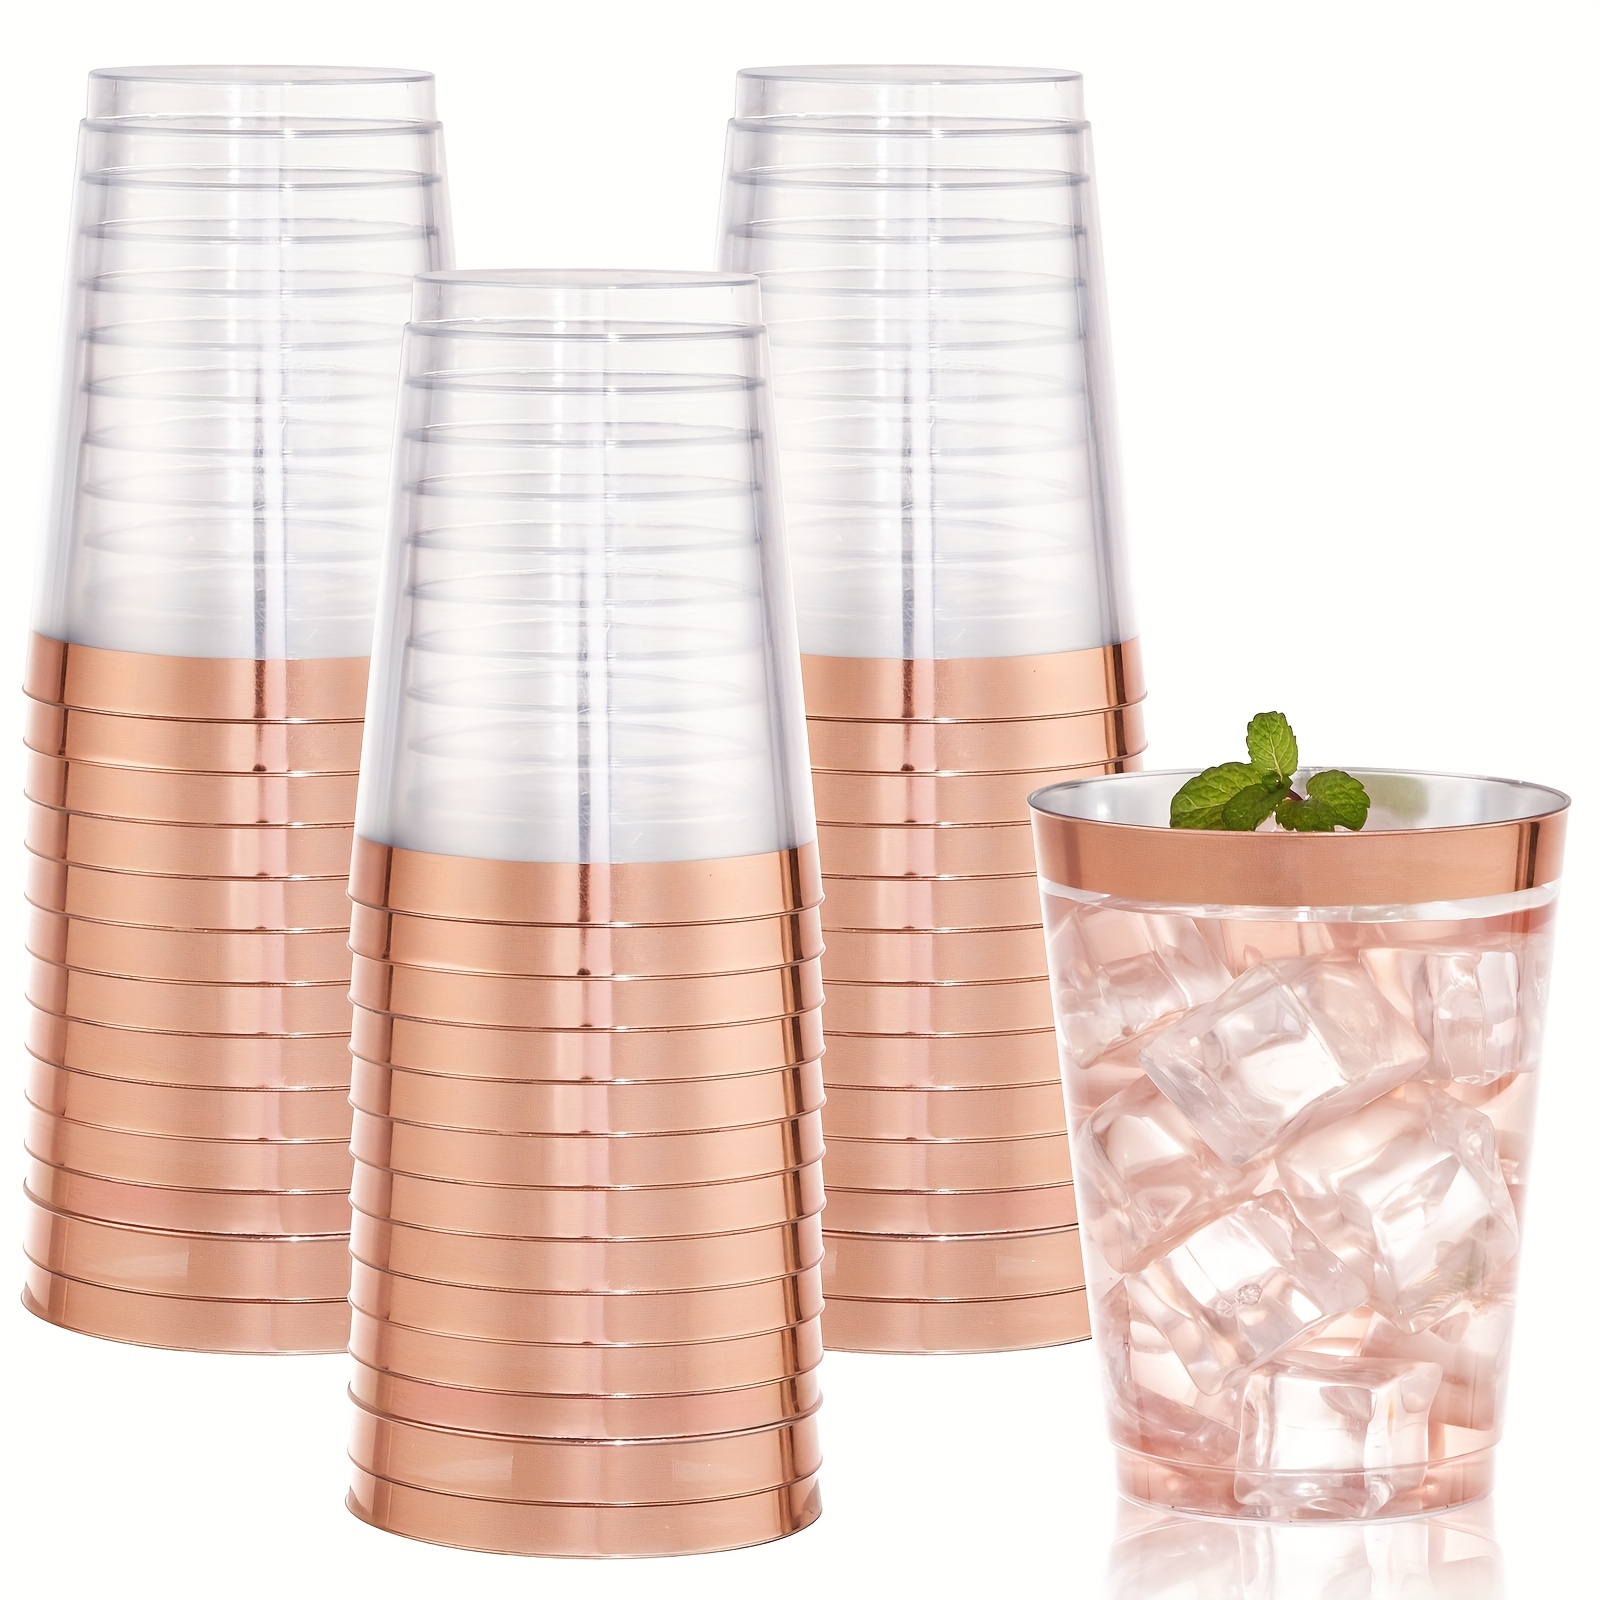  Paquete de 50 vasos de plástico con borde de oro rosa, 9 onzas,  vasos desechables de color oro rosa de alta calidad, copas de vino de plástico  duro transparente para reuniones